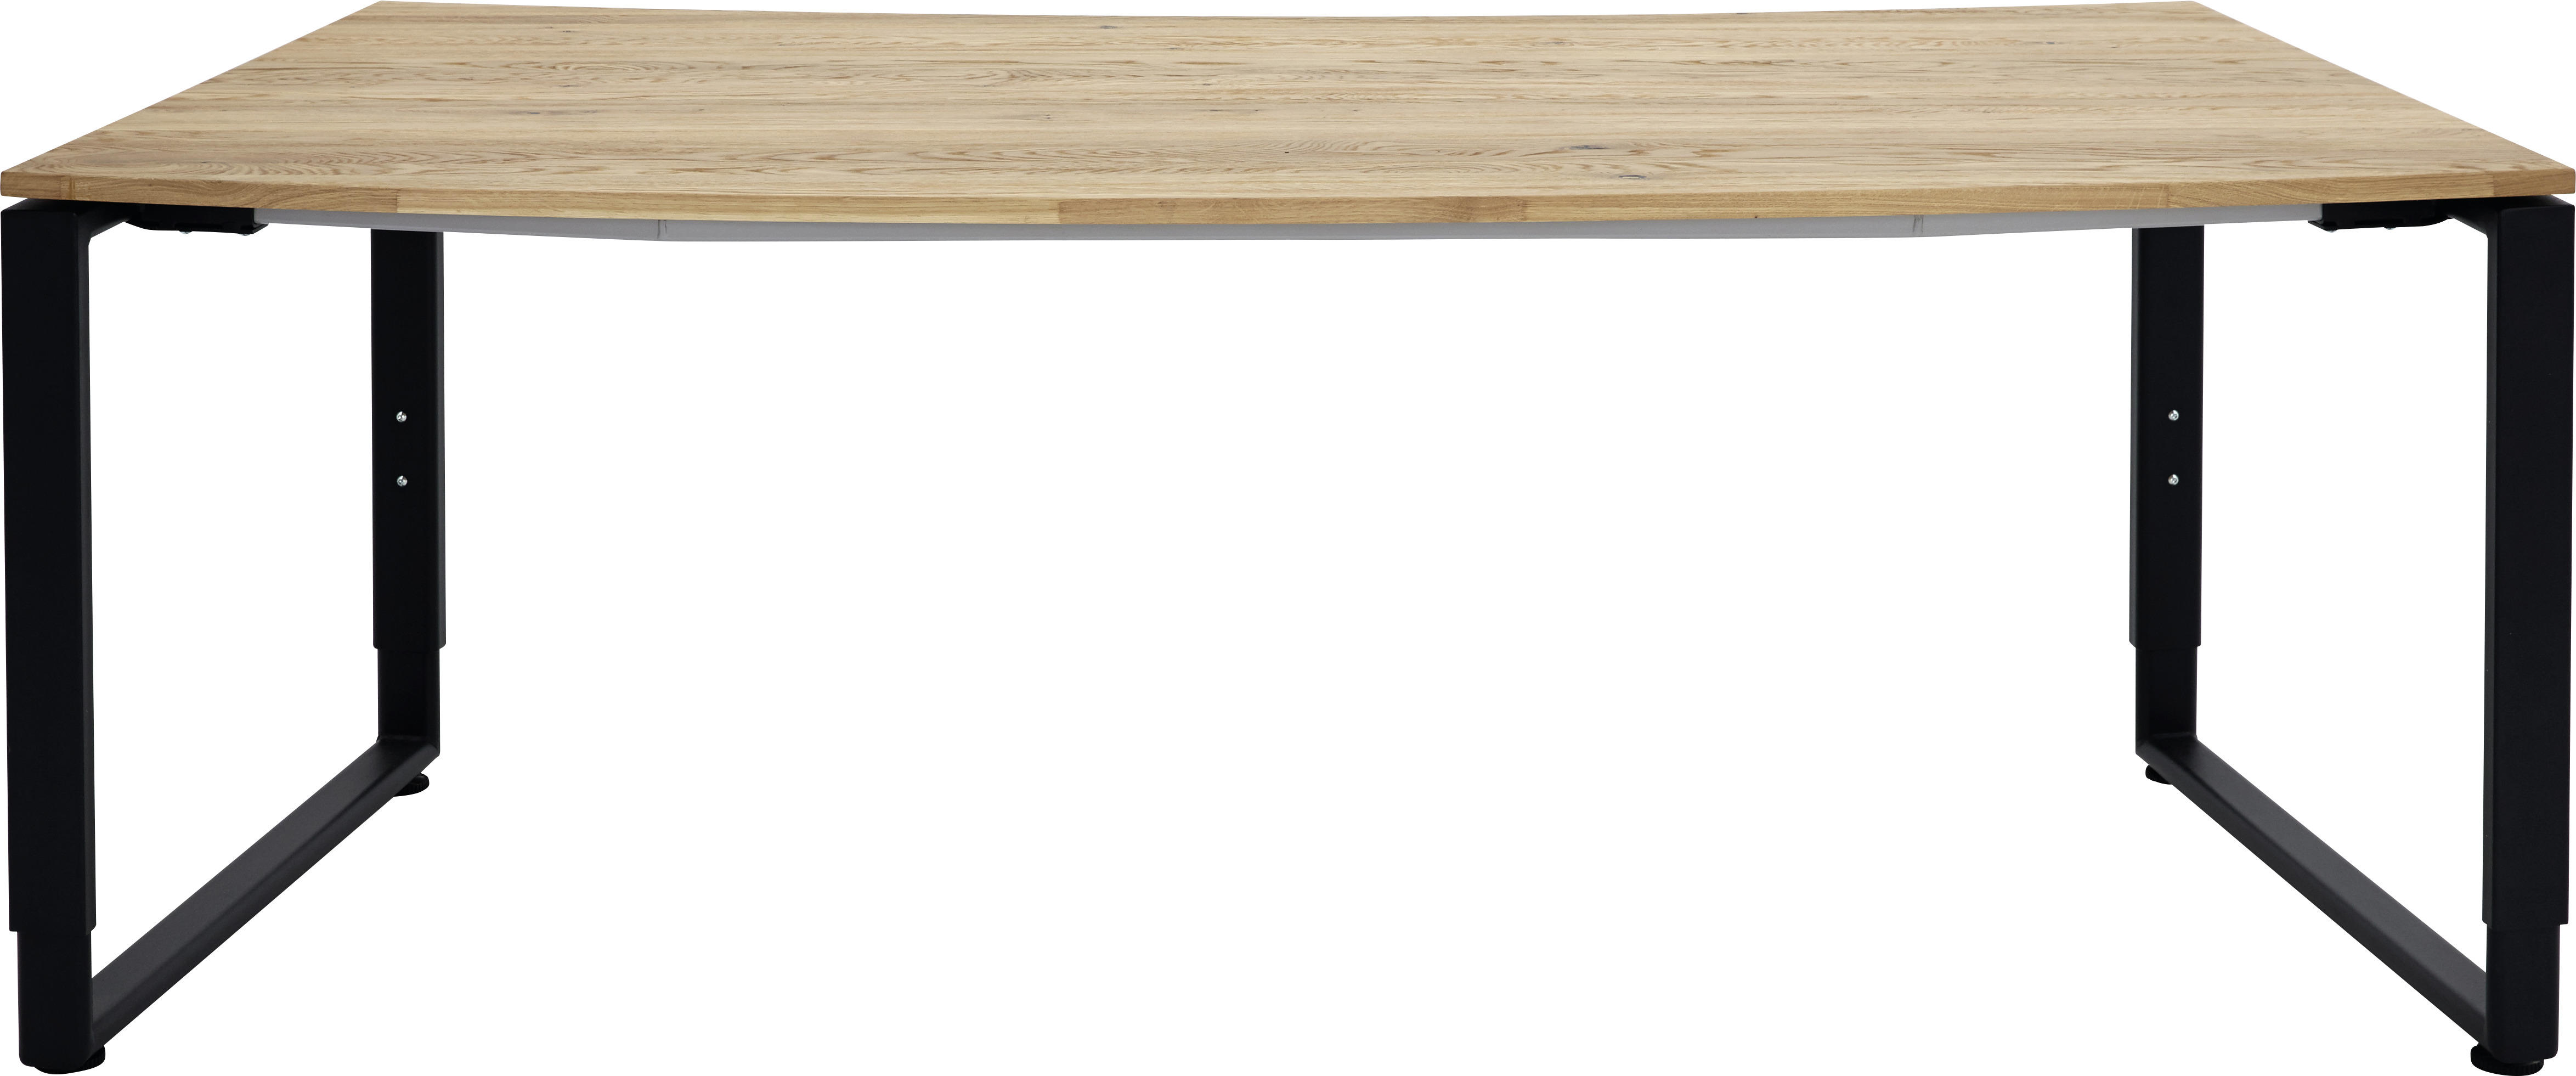 SCHREIBTISCH 200/80-88,5/68-82 cm  in Anthrazit, Grau, Eichefarben  - Eichefarben/Anthrazit, Design, Holz/Metall (200/80-88,5/68-82cm) - Moderano